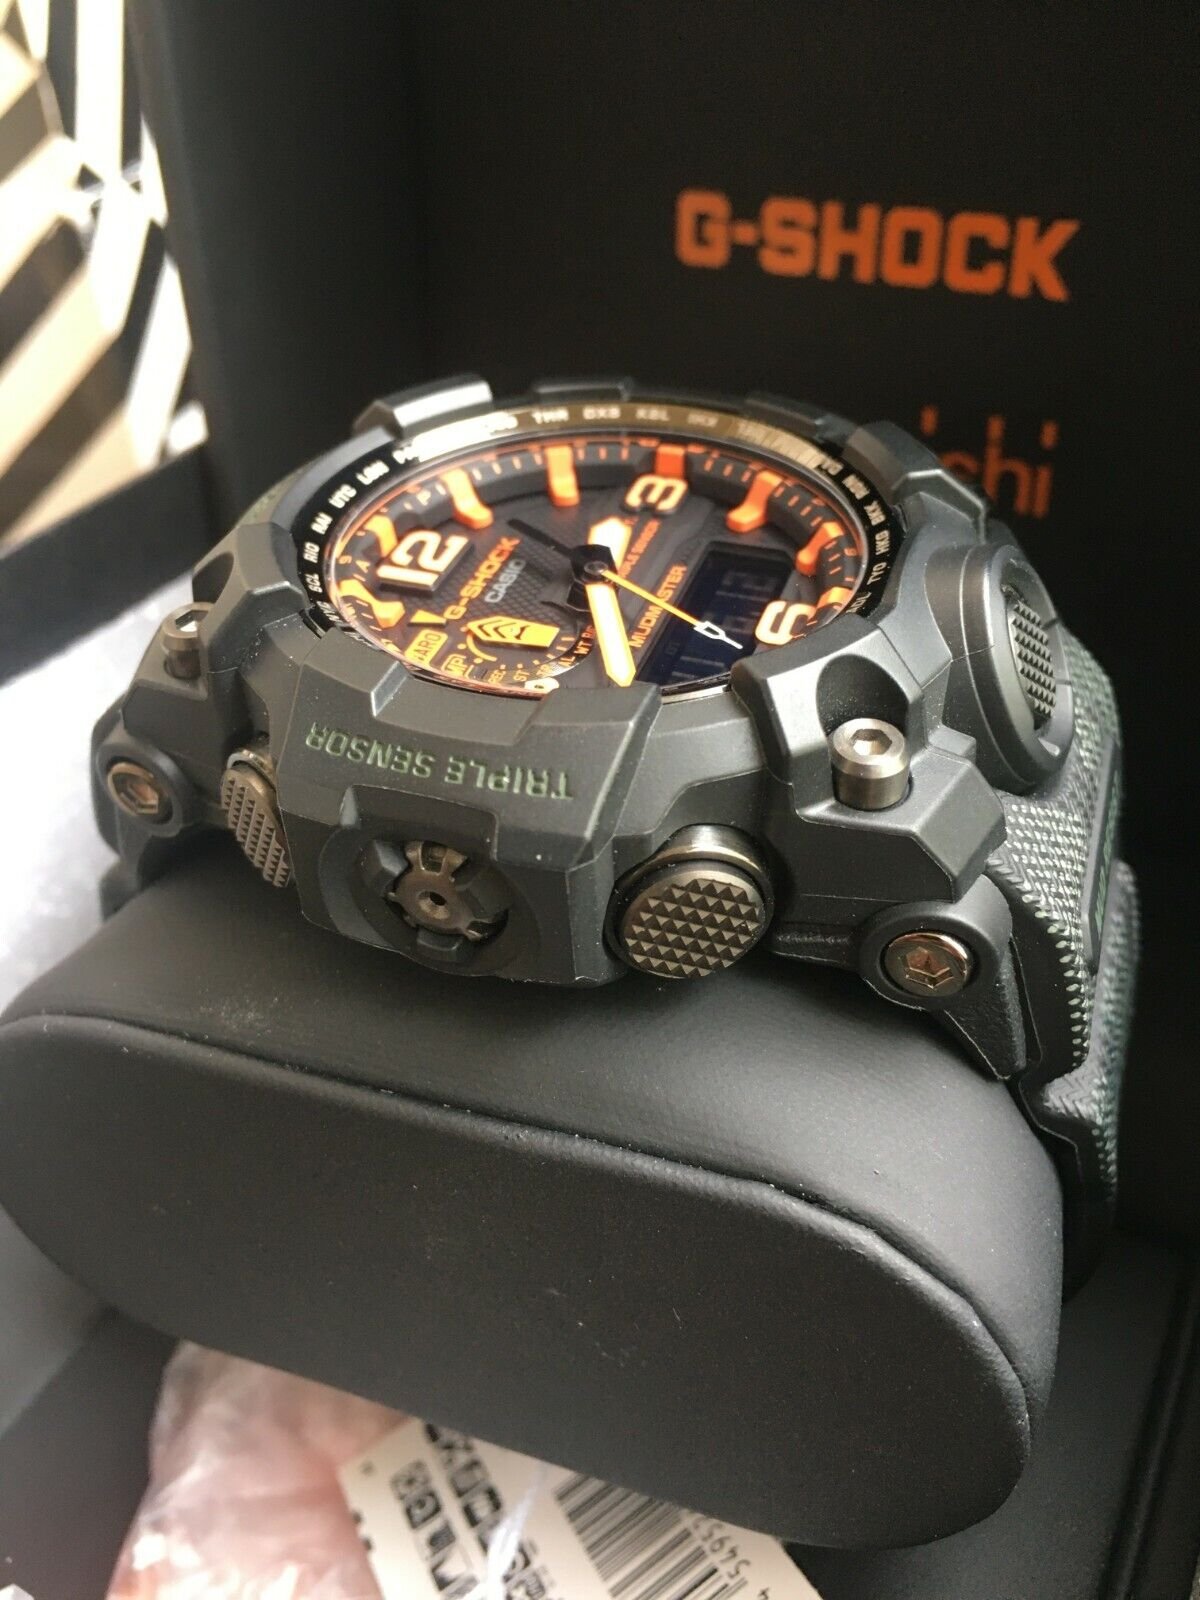 G-Shock x Maharishi Watch GD-X6900MH-1